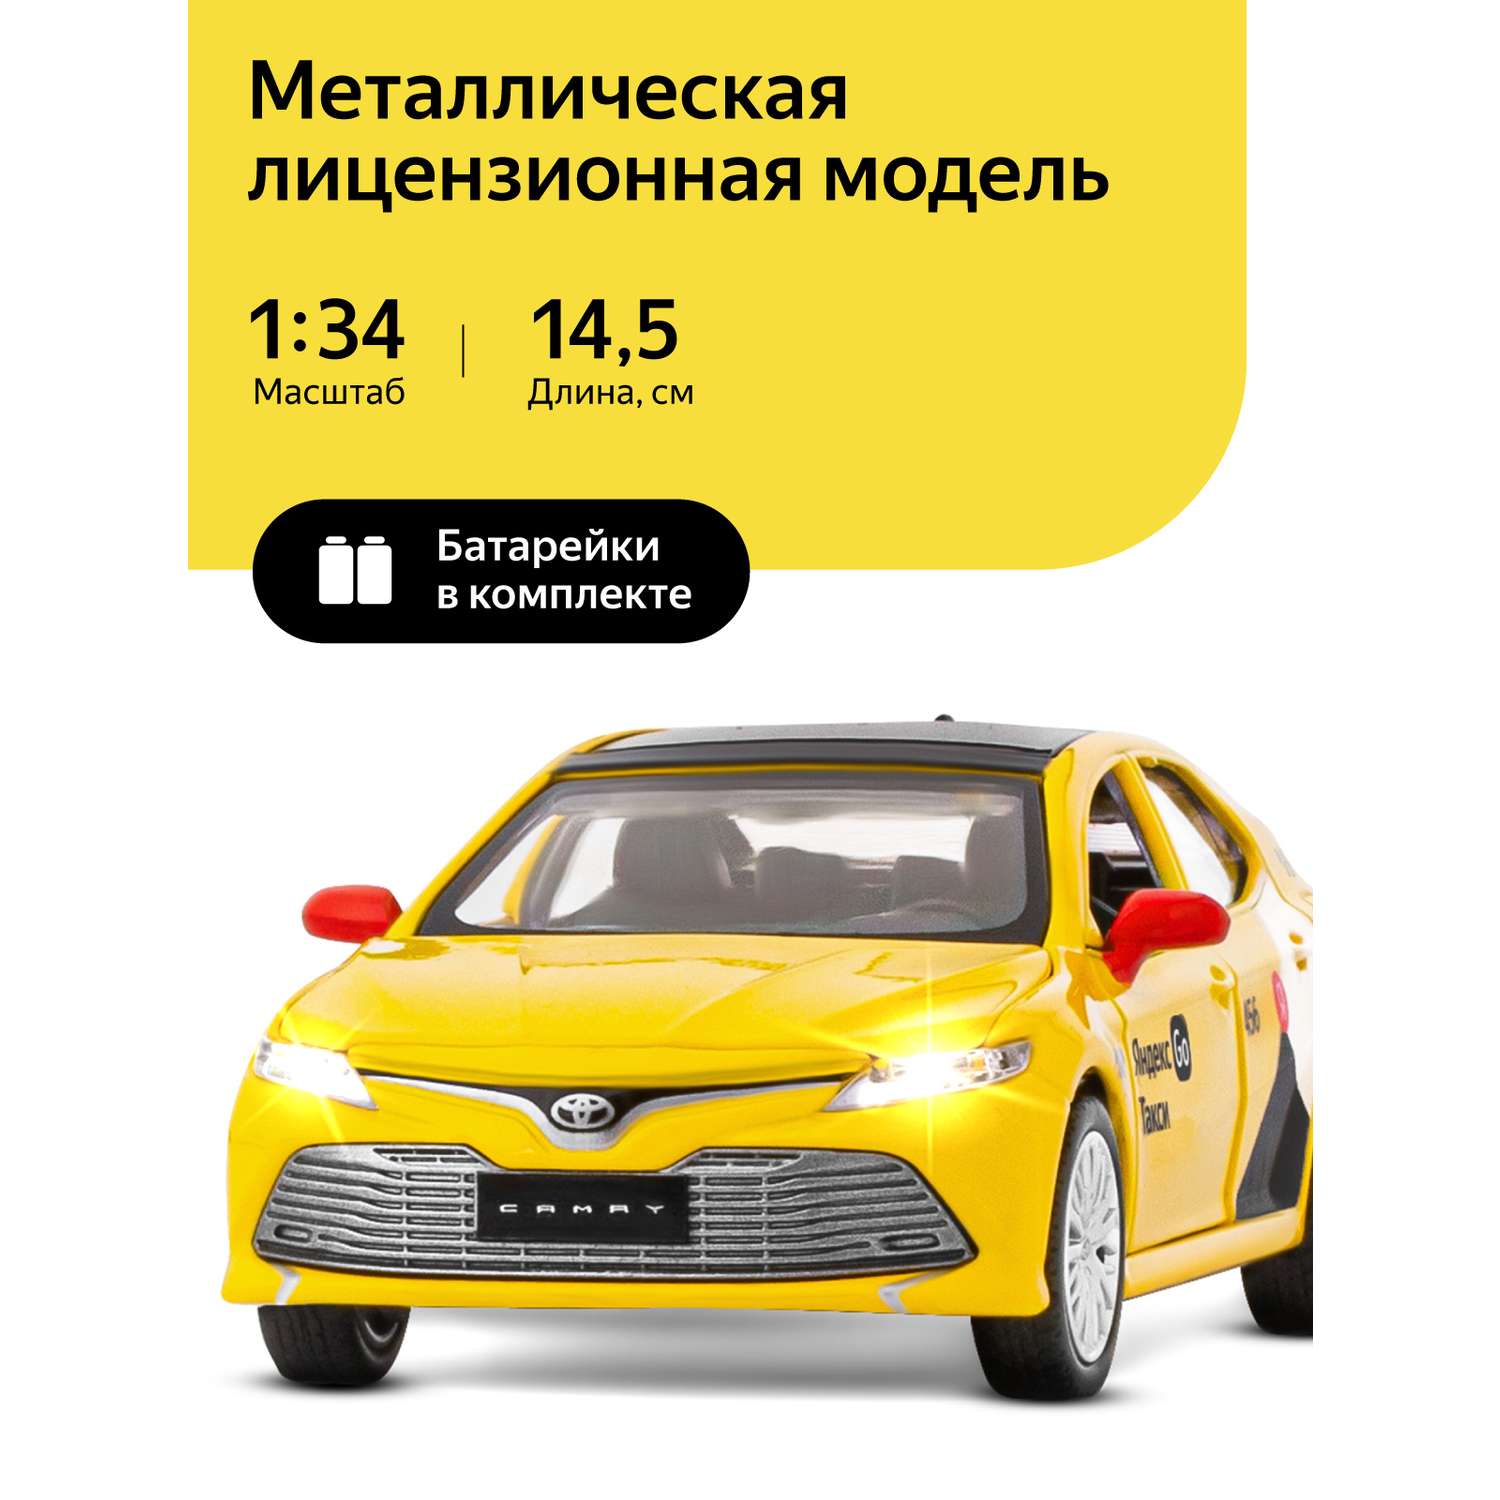 Машинка металлическая Яндекс GO игрушка детская Toyota Camry цвет желтый Озвучено Алисой JB1251482 - фото 1